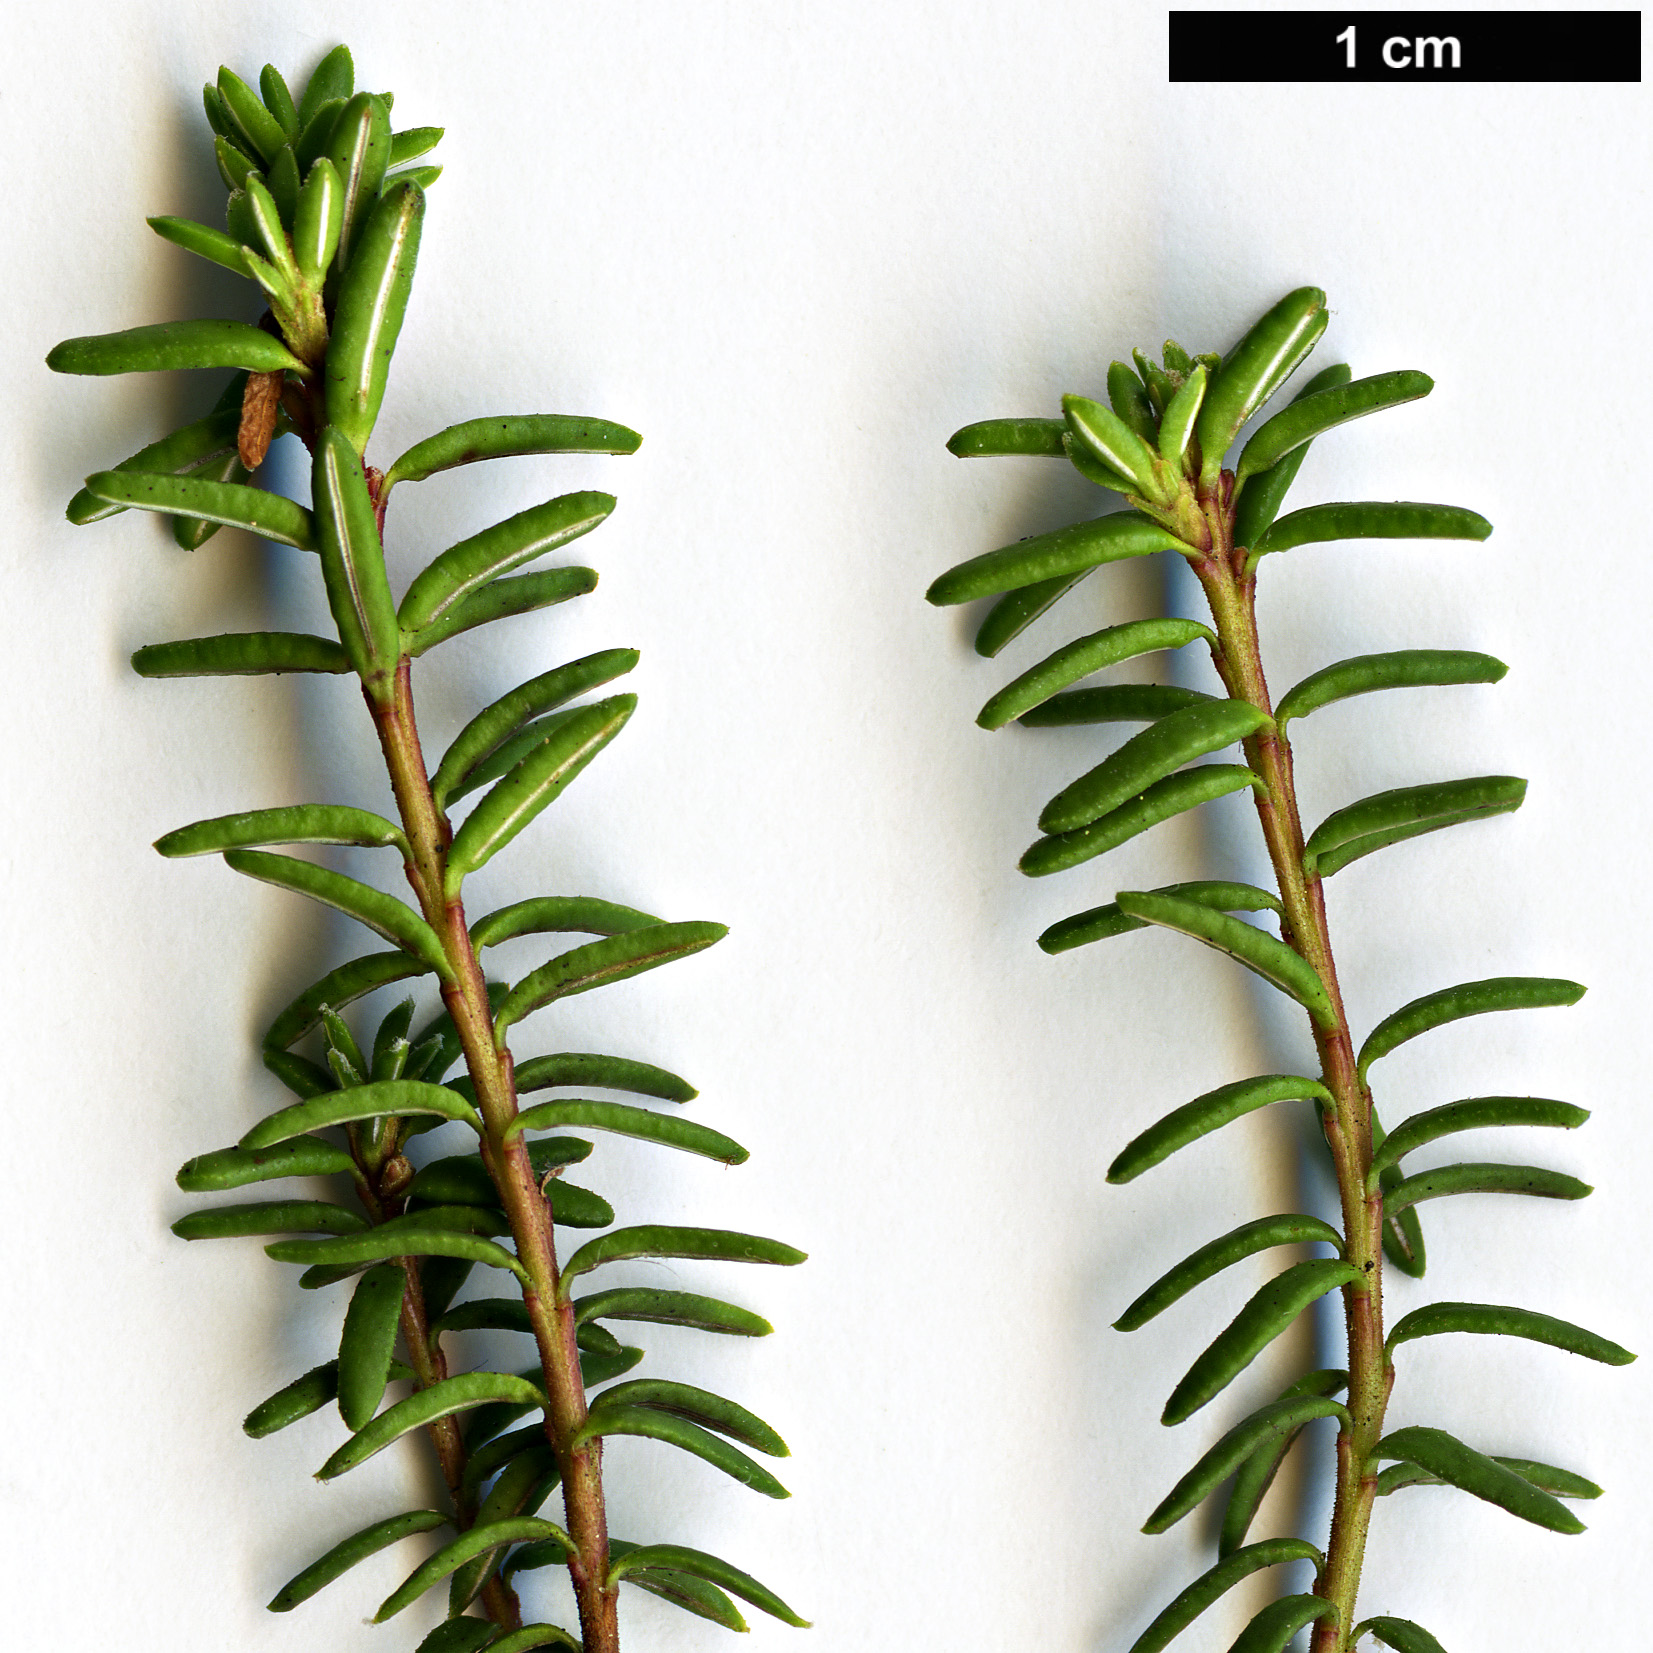 High resolution image: Family: Ericaceae - Genus: Empetrum - Taxon: nigrum - SpeciesSub: subsp. hermaphroditum